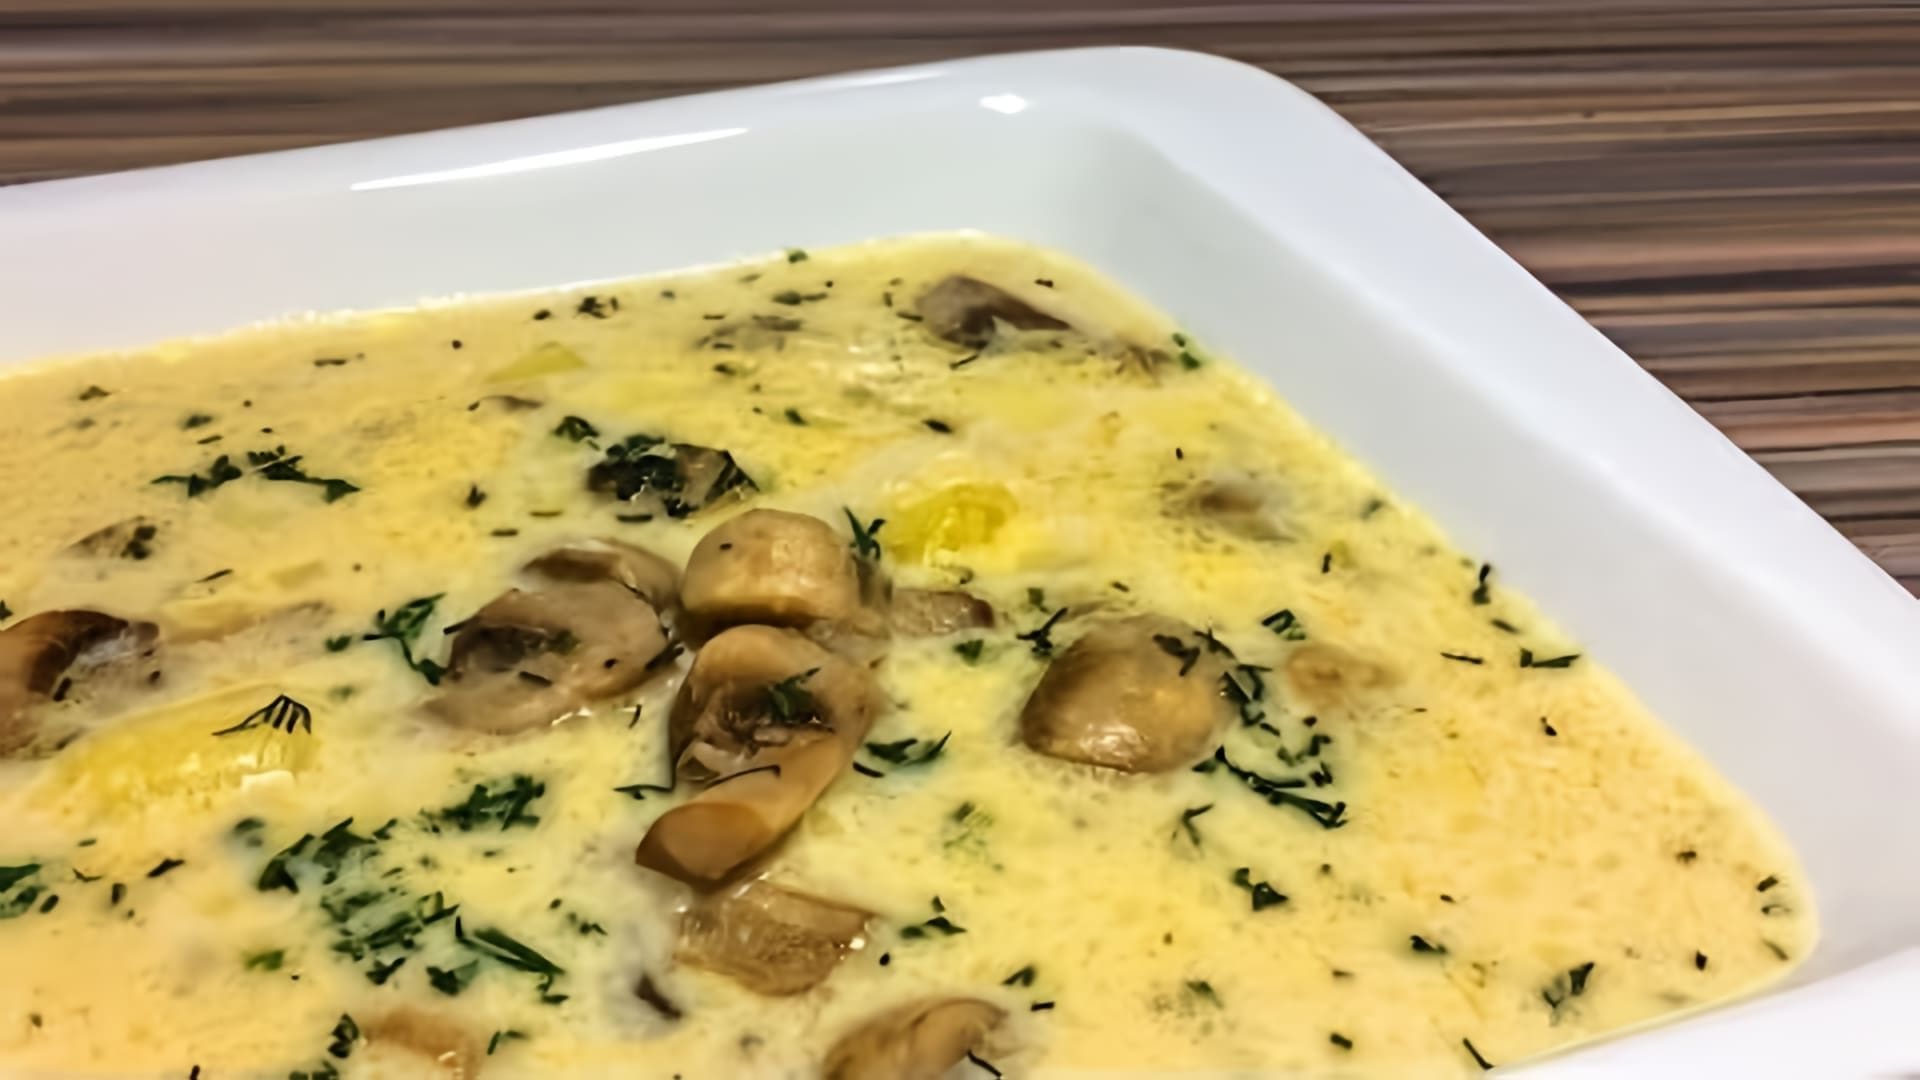 Сырный суп с грибами - это невероятно вкусное блюдо, которое можно приготовить в домашних условиях